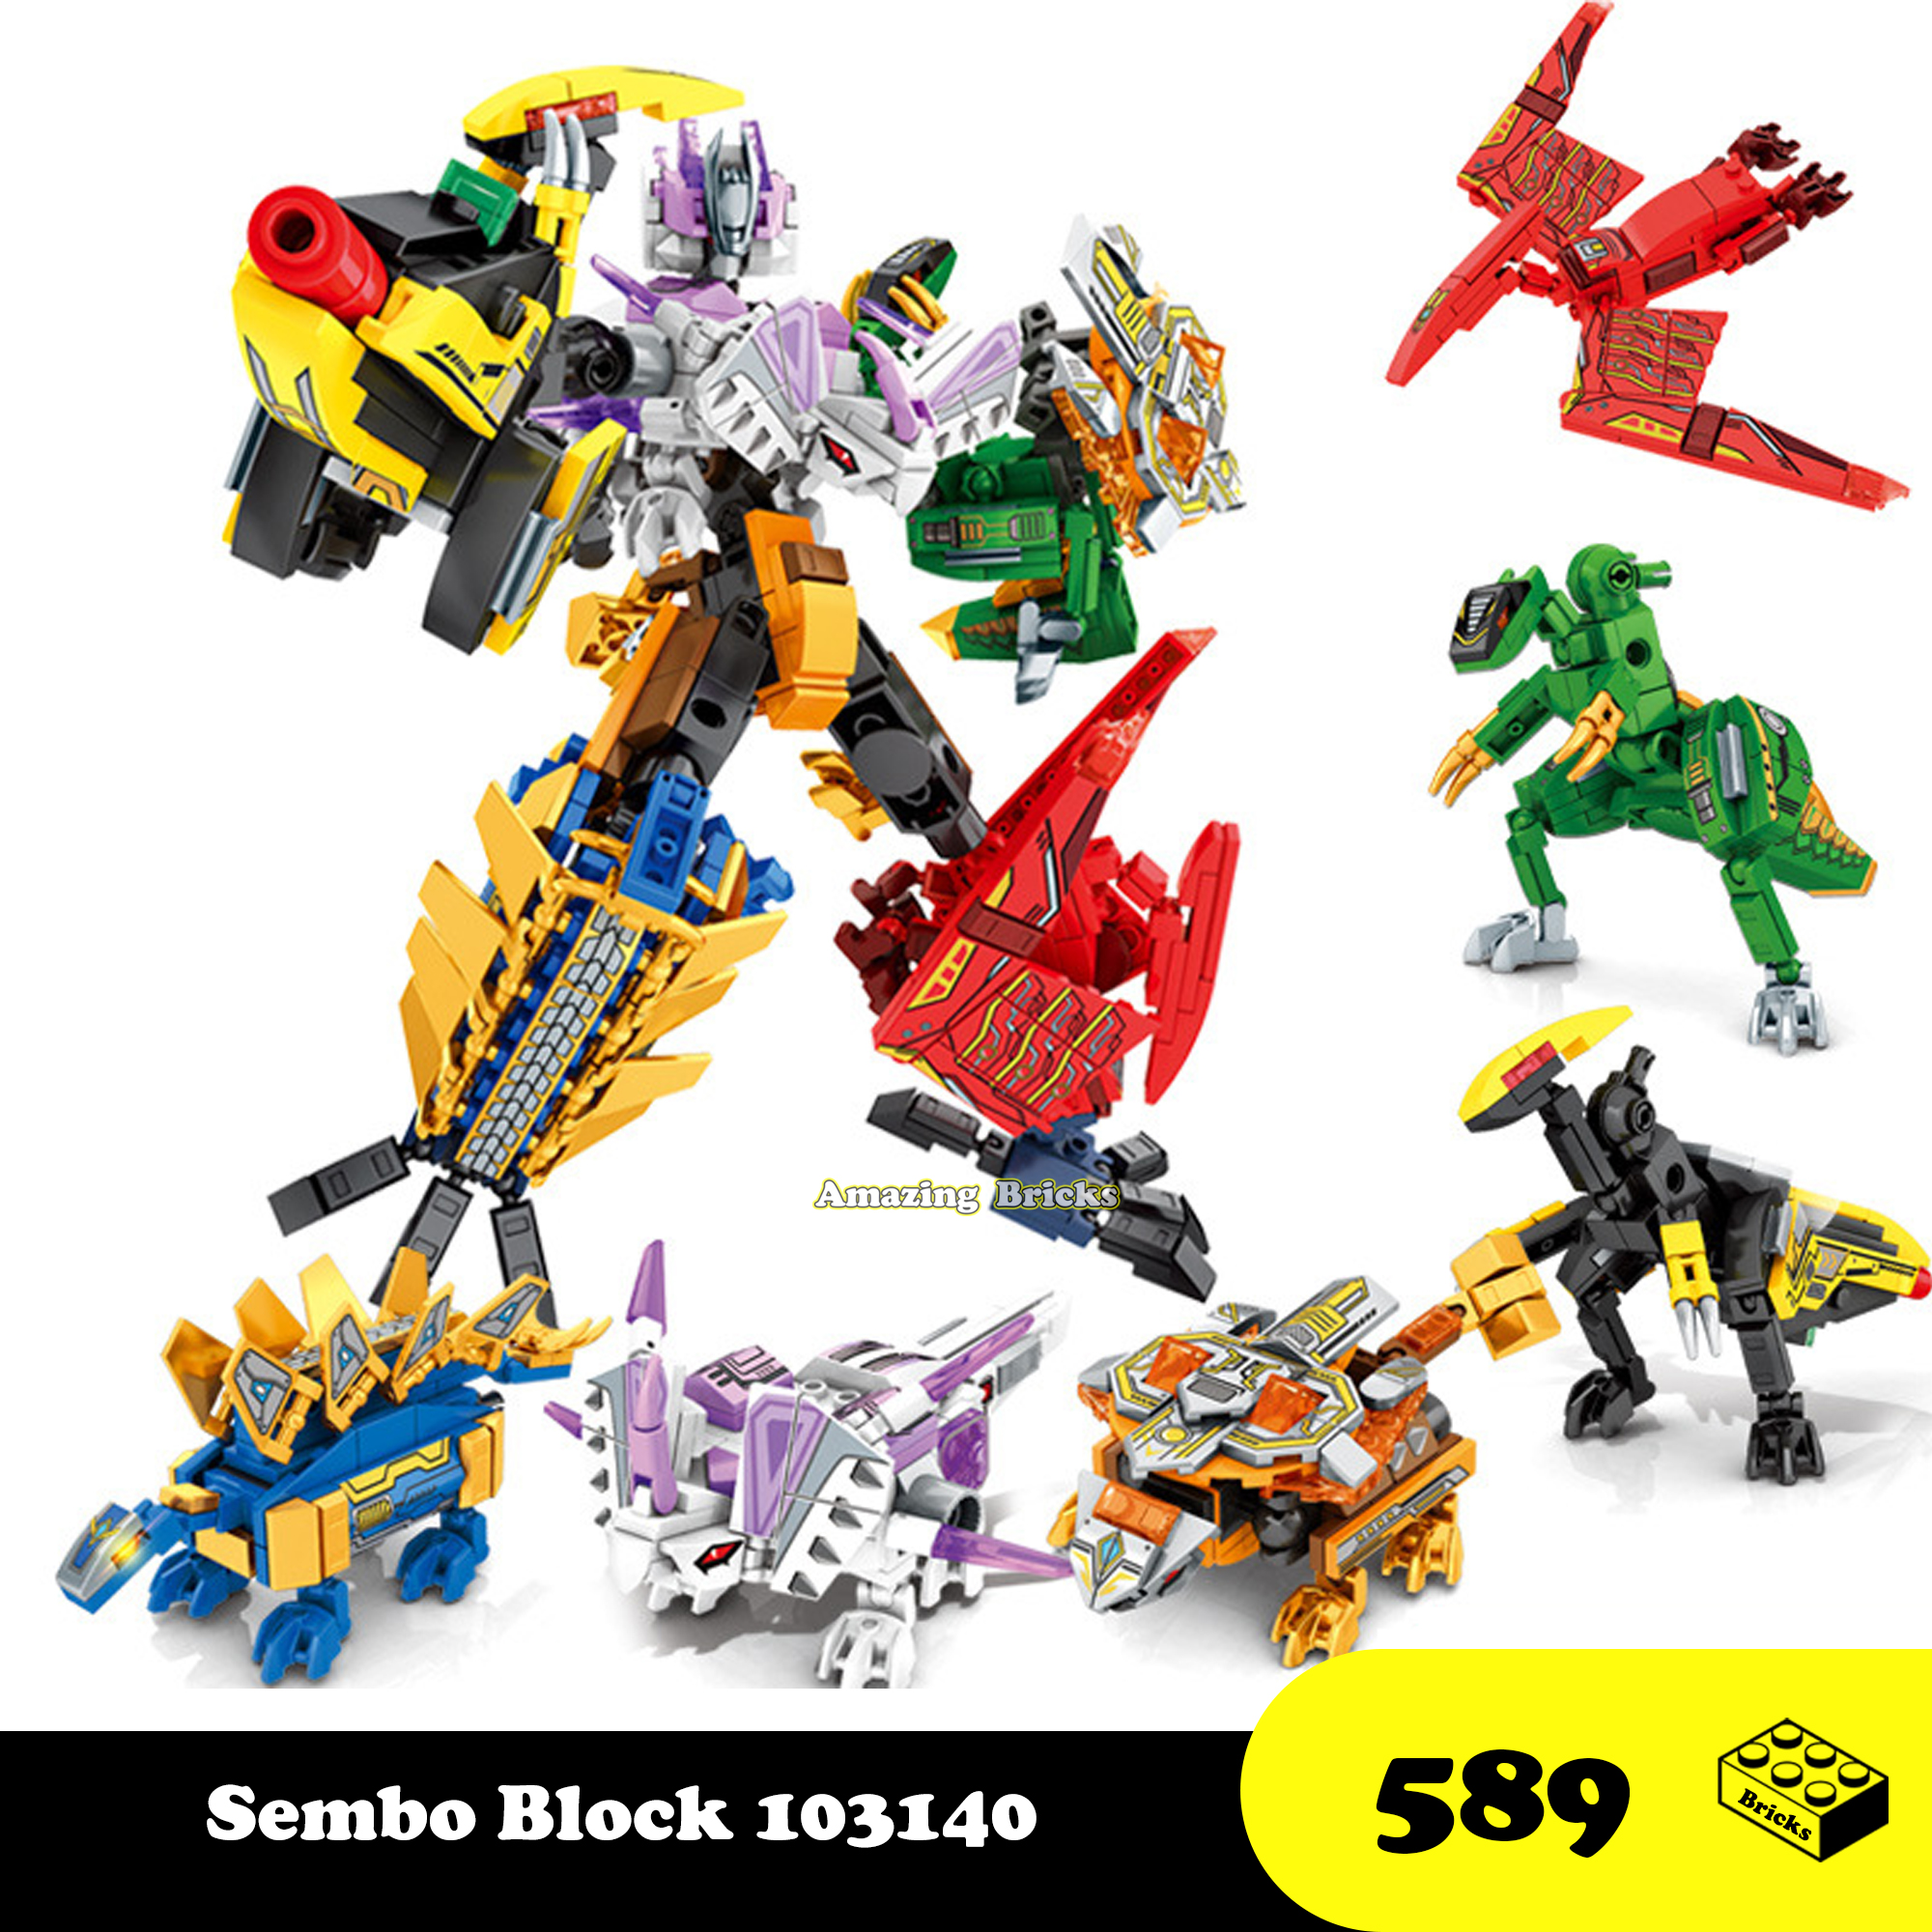 Đồ chơi Lắp ráp Robot Khủng Long, Sembo Block 103140-45 Xếp hình thông minh thumbnail